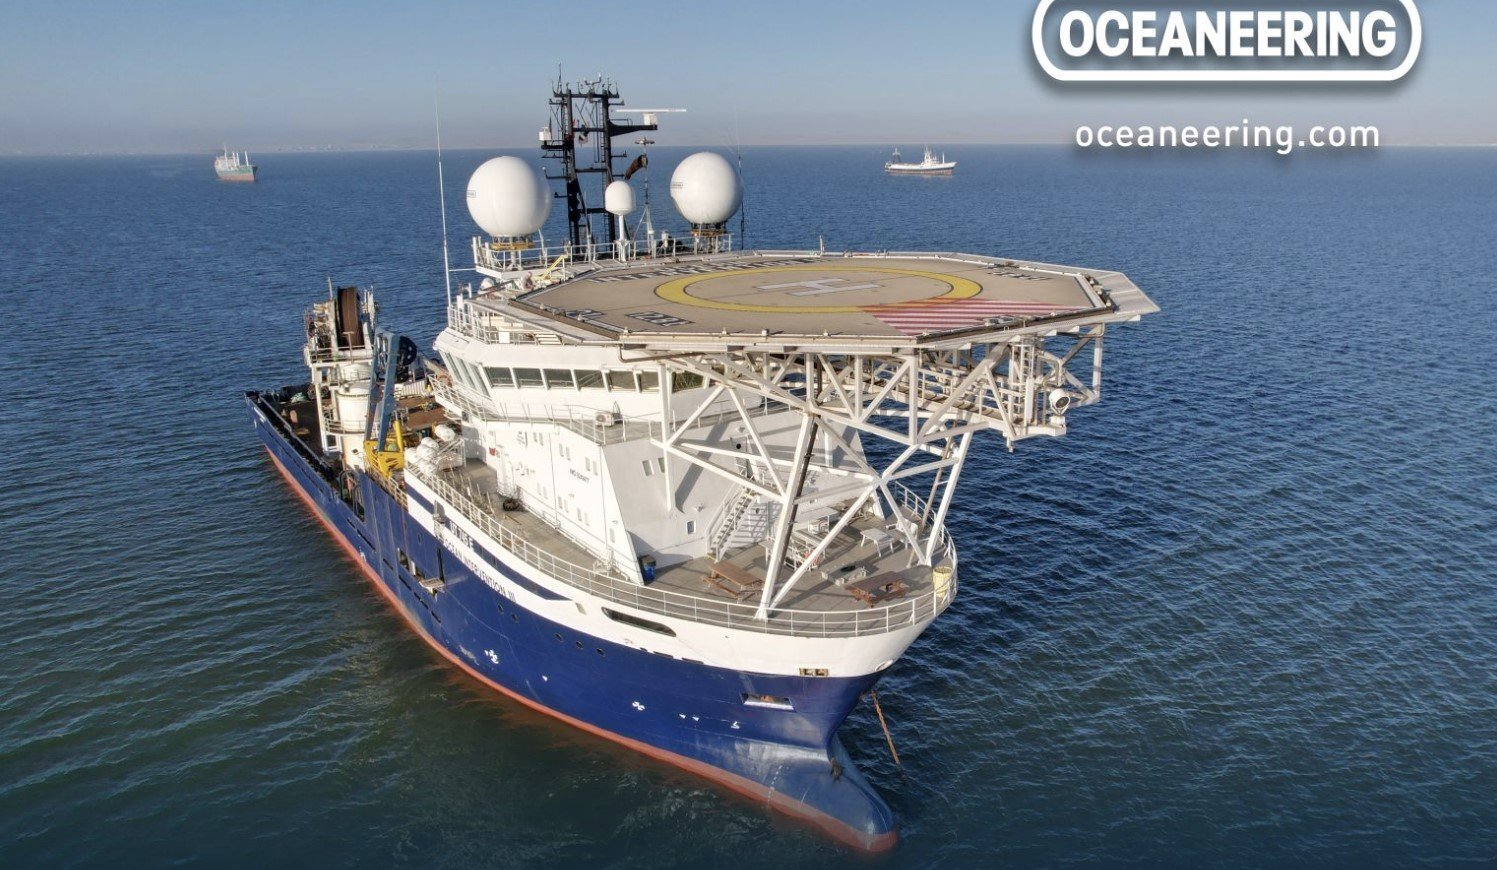 A Oceaneering assegurou contratos internacionais avaliados em mais de US$ 100 milhões, abrangendo projetos cruciais em Angola e na Guiana.